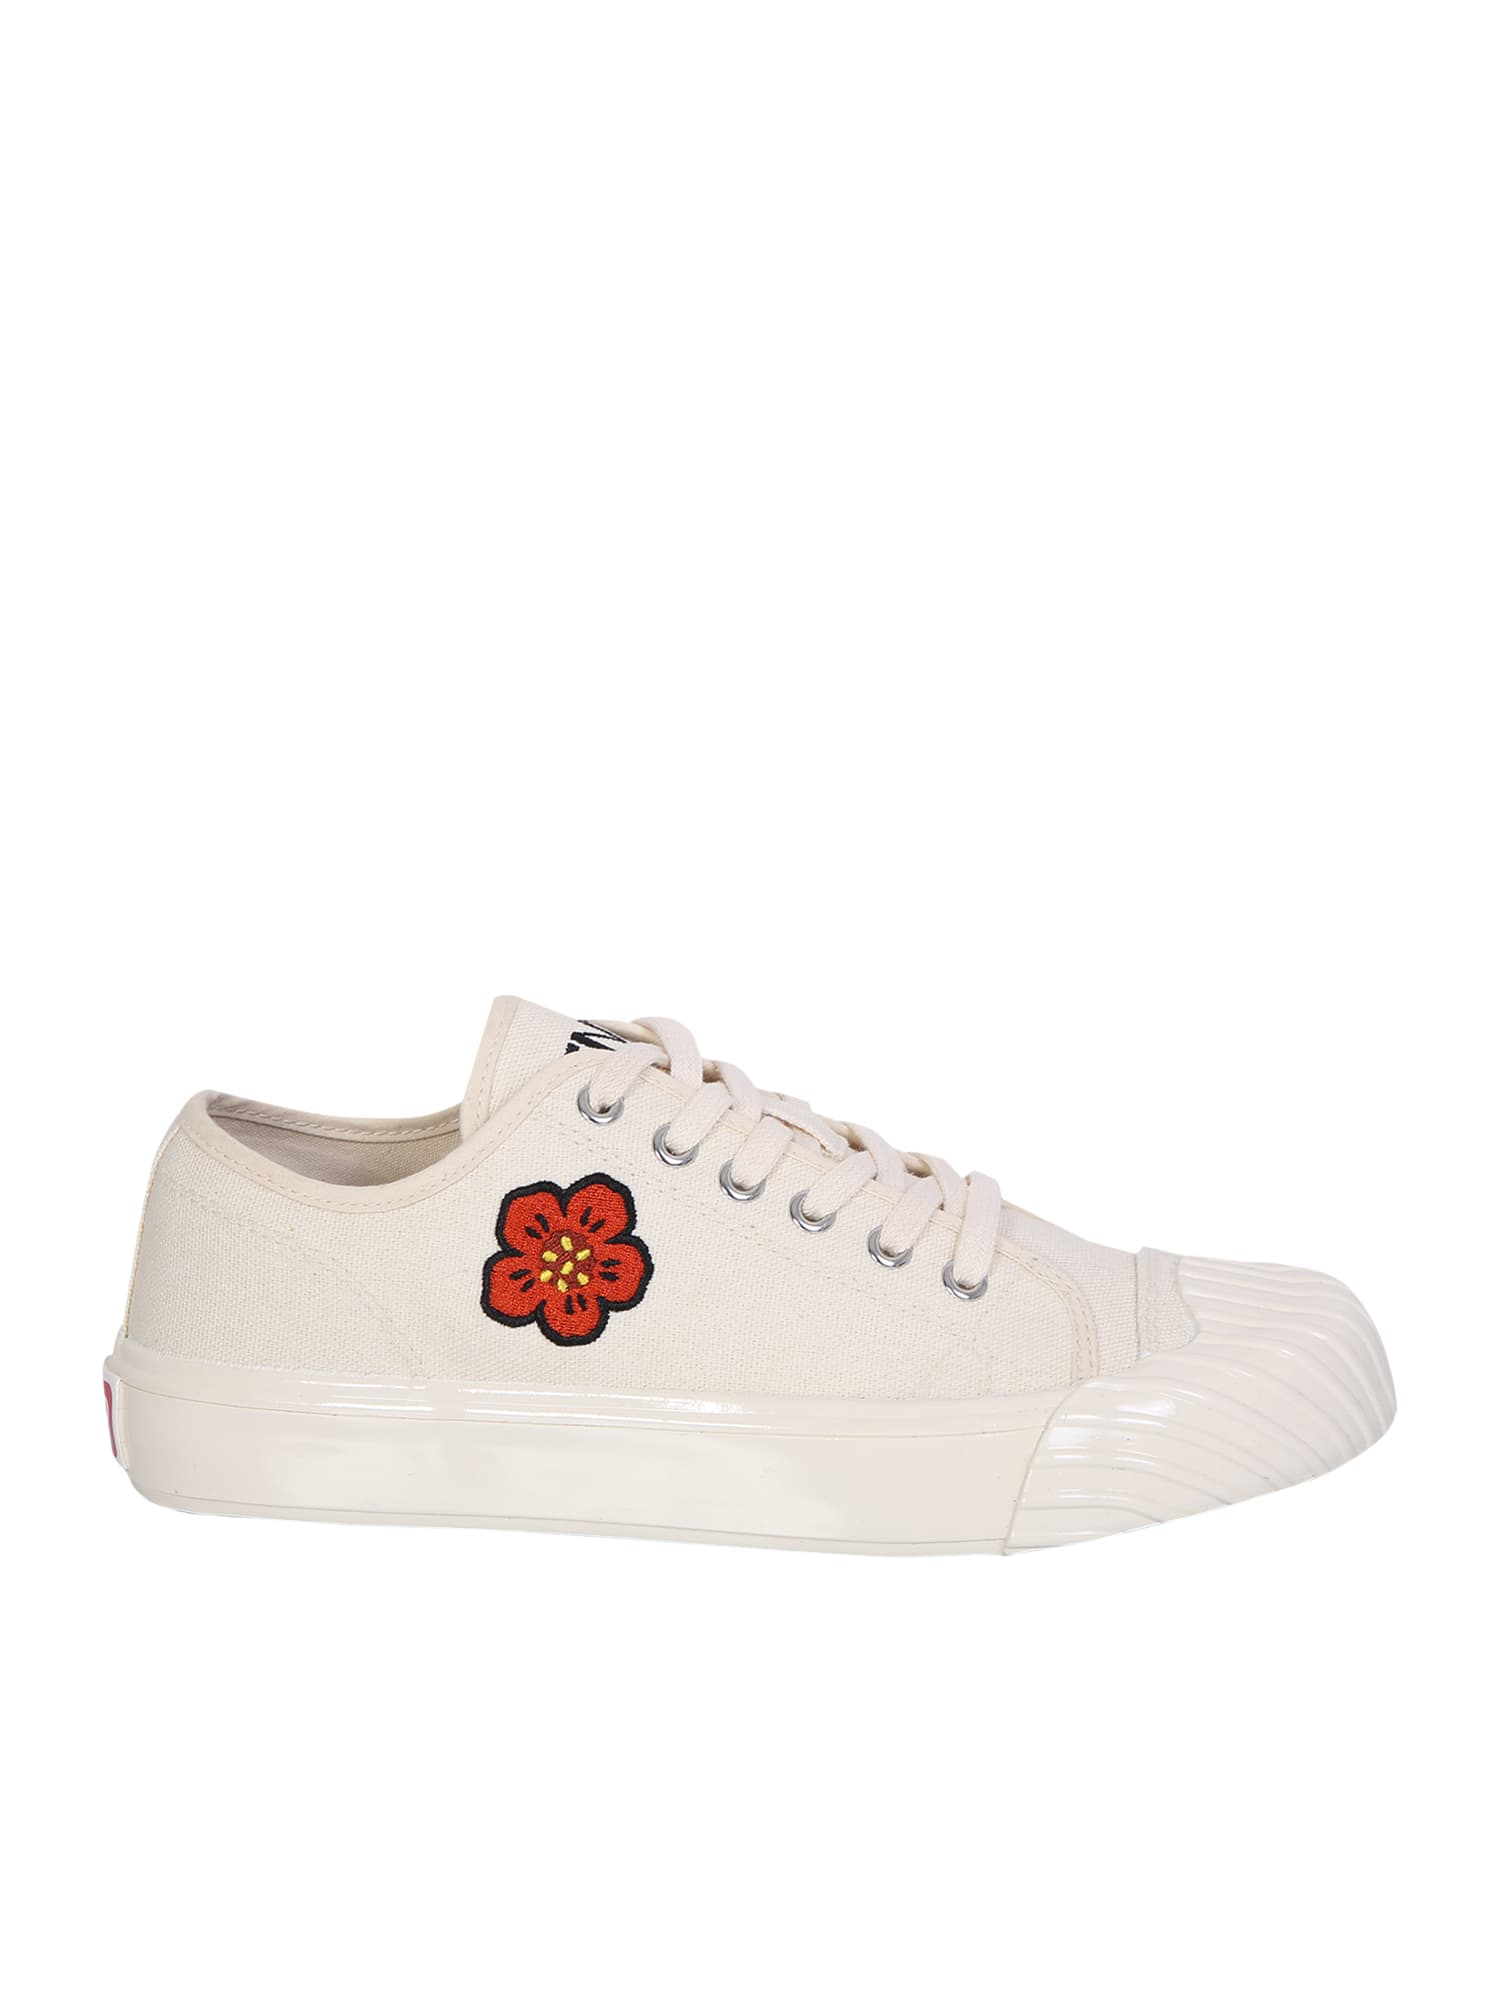 Kenzo Sneakers Boke Flower In White